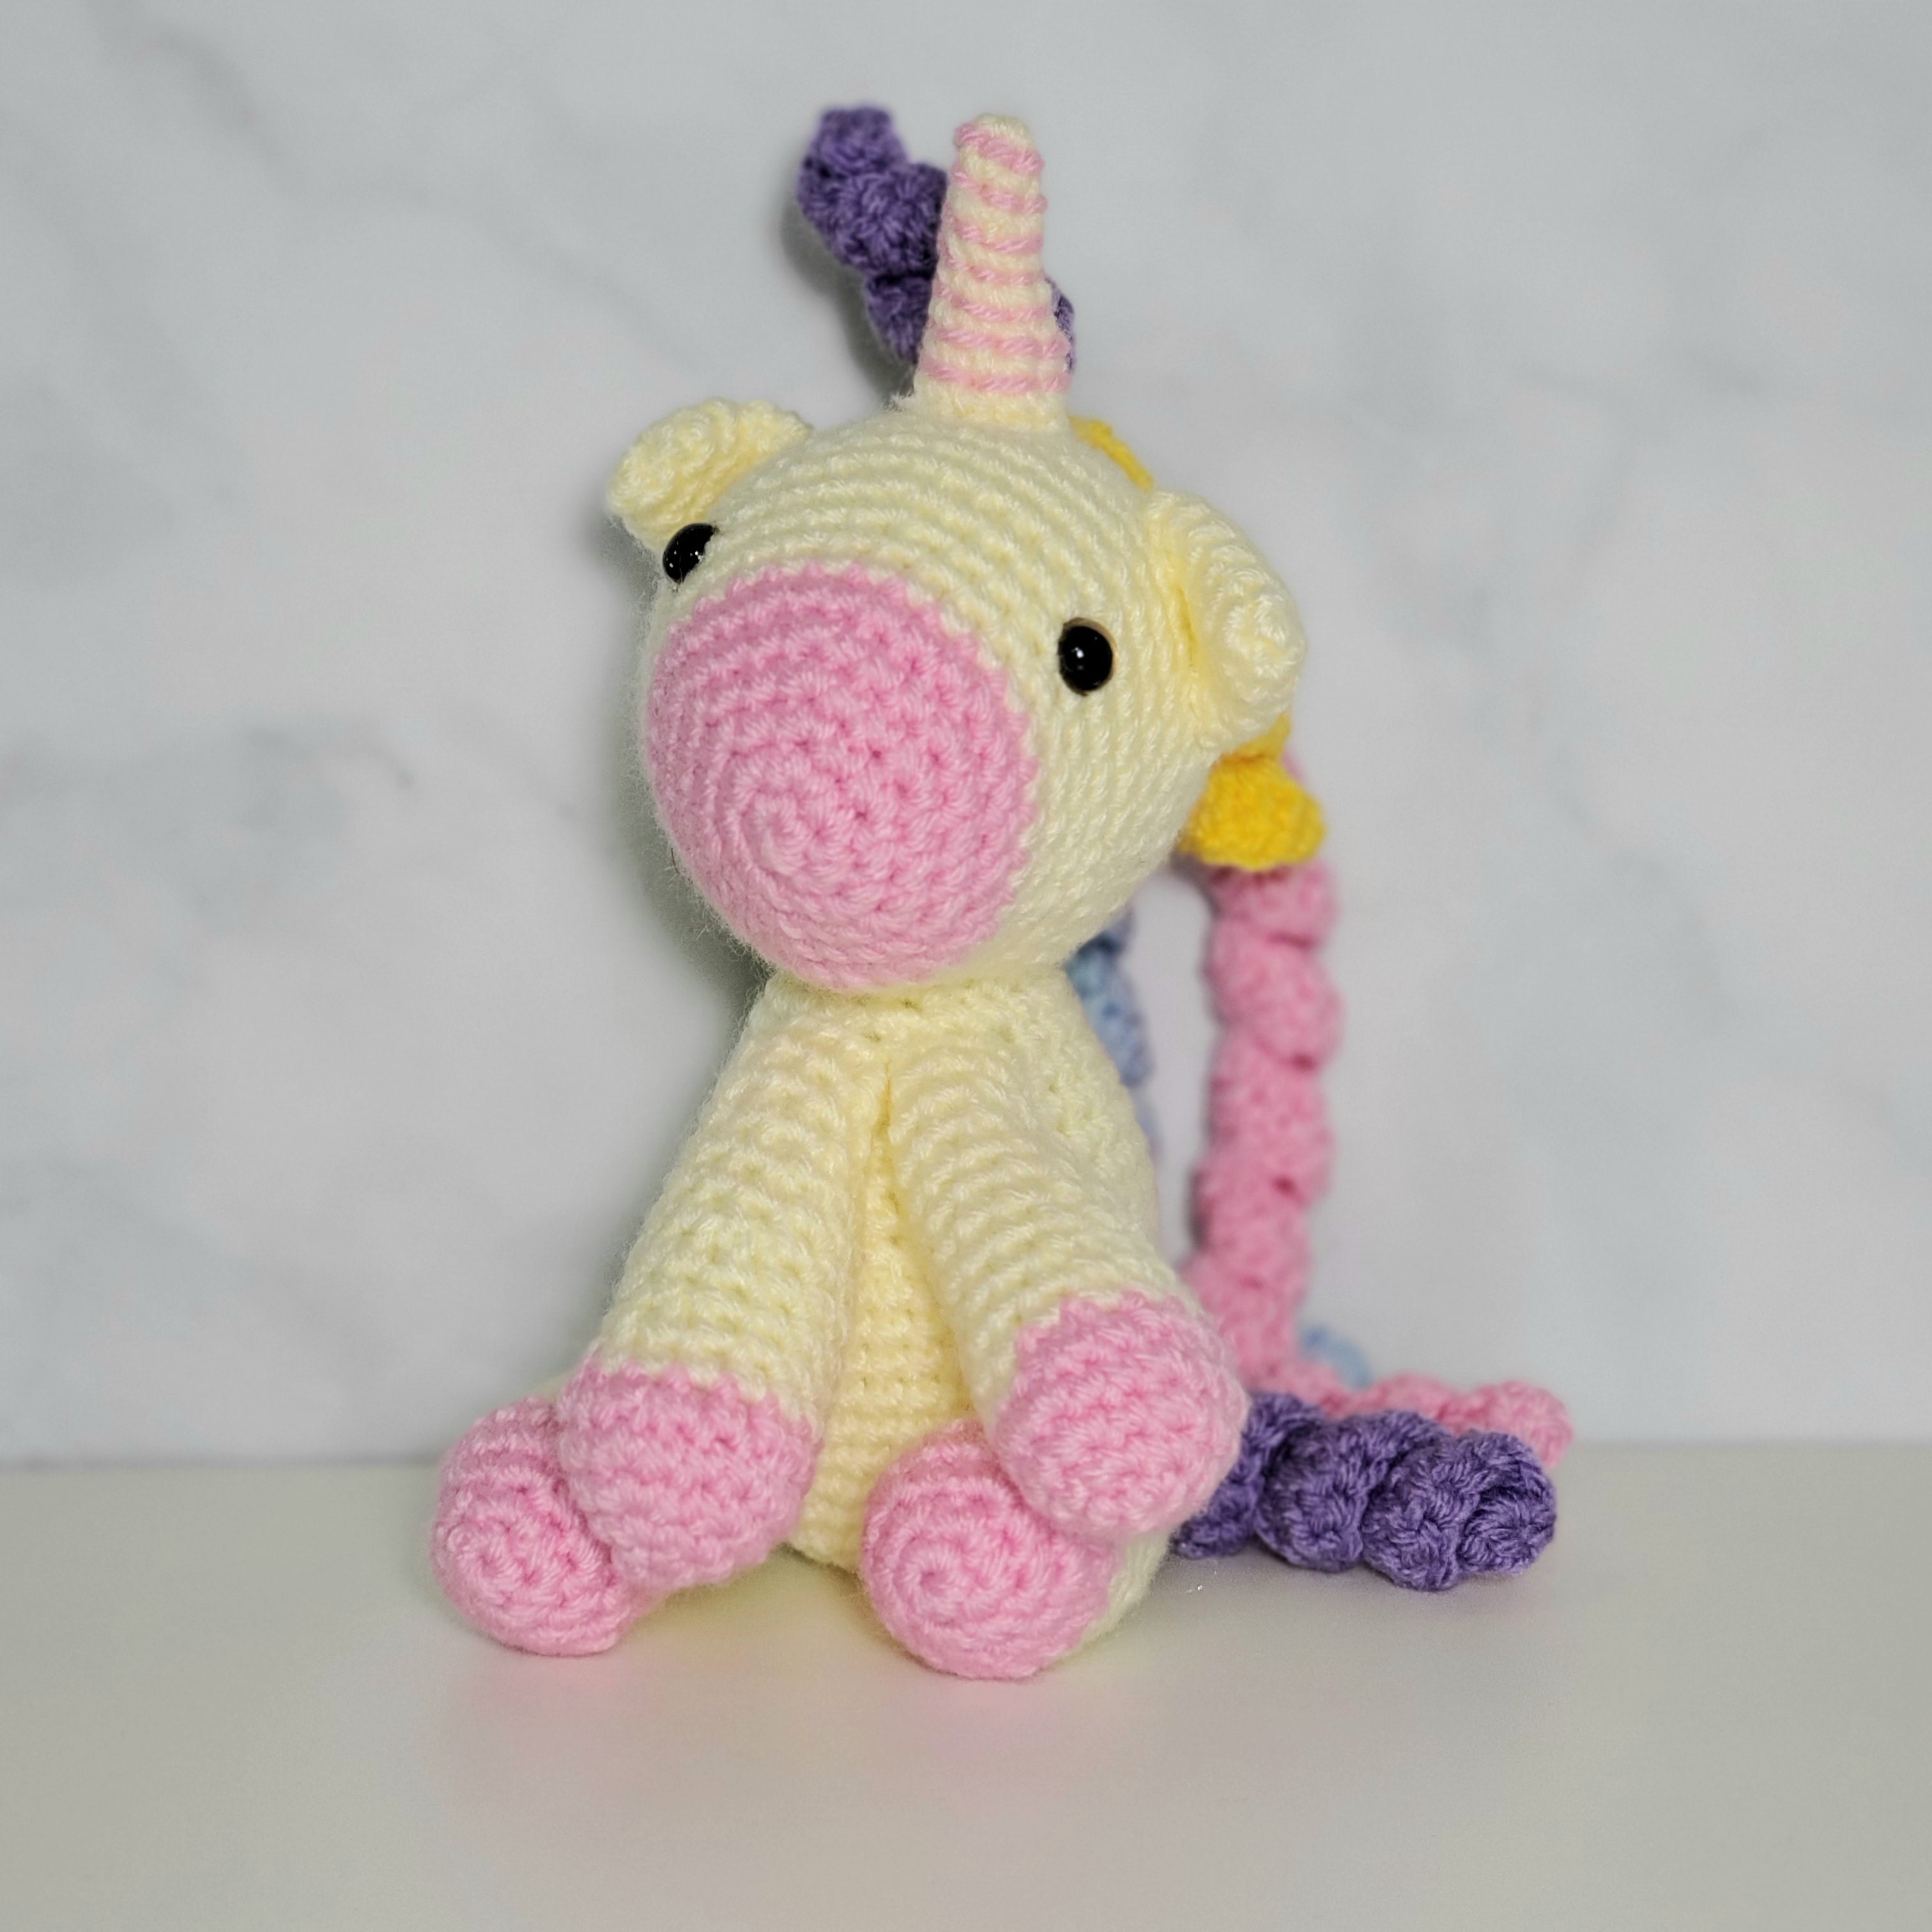 Unicorn Plush Toy - Sitting - 8 Inches